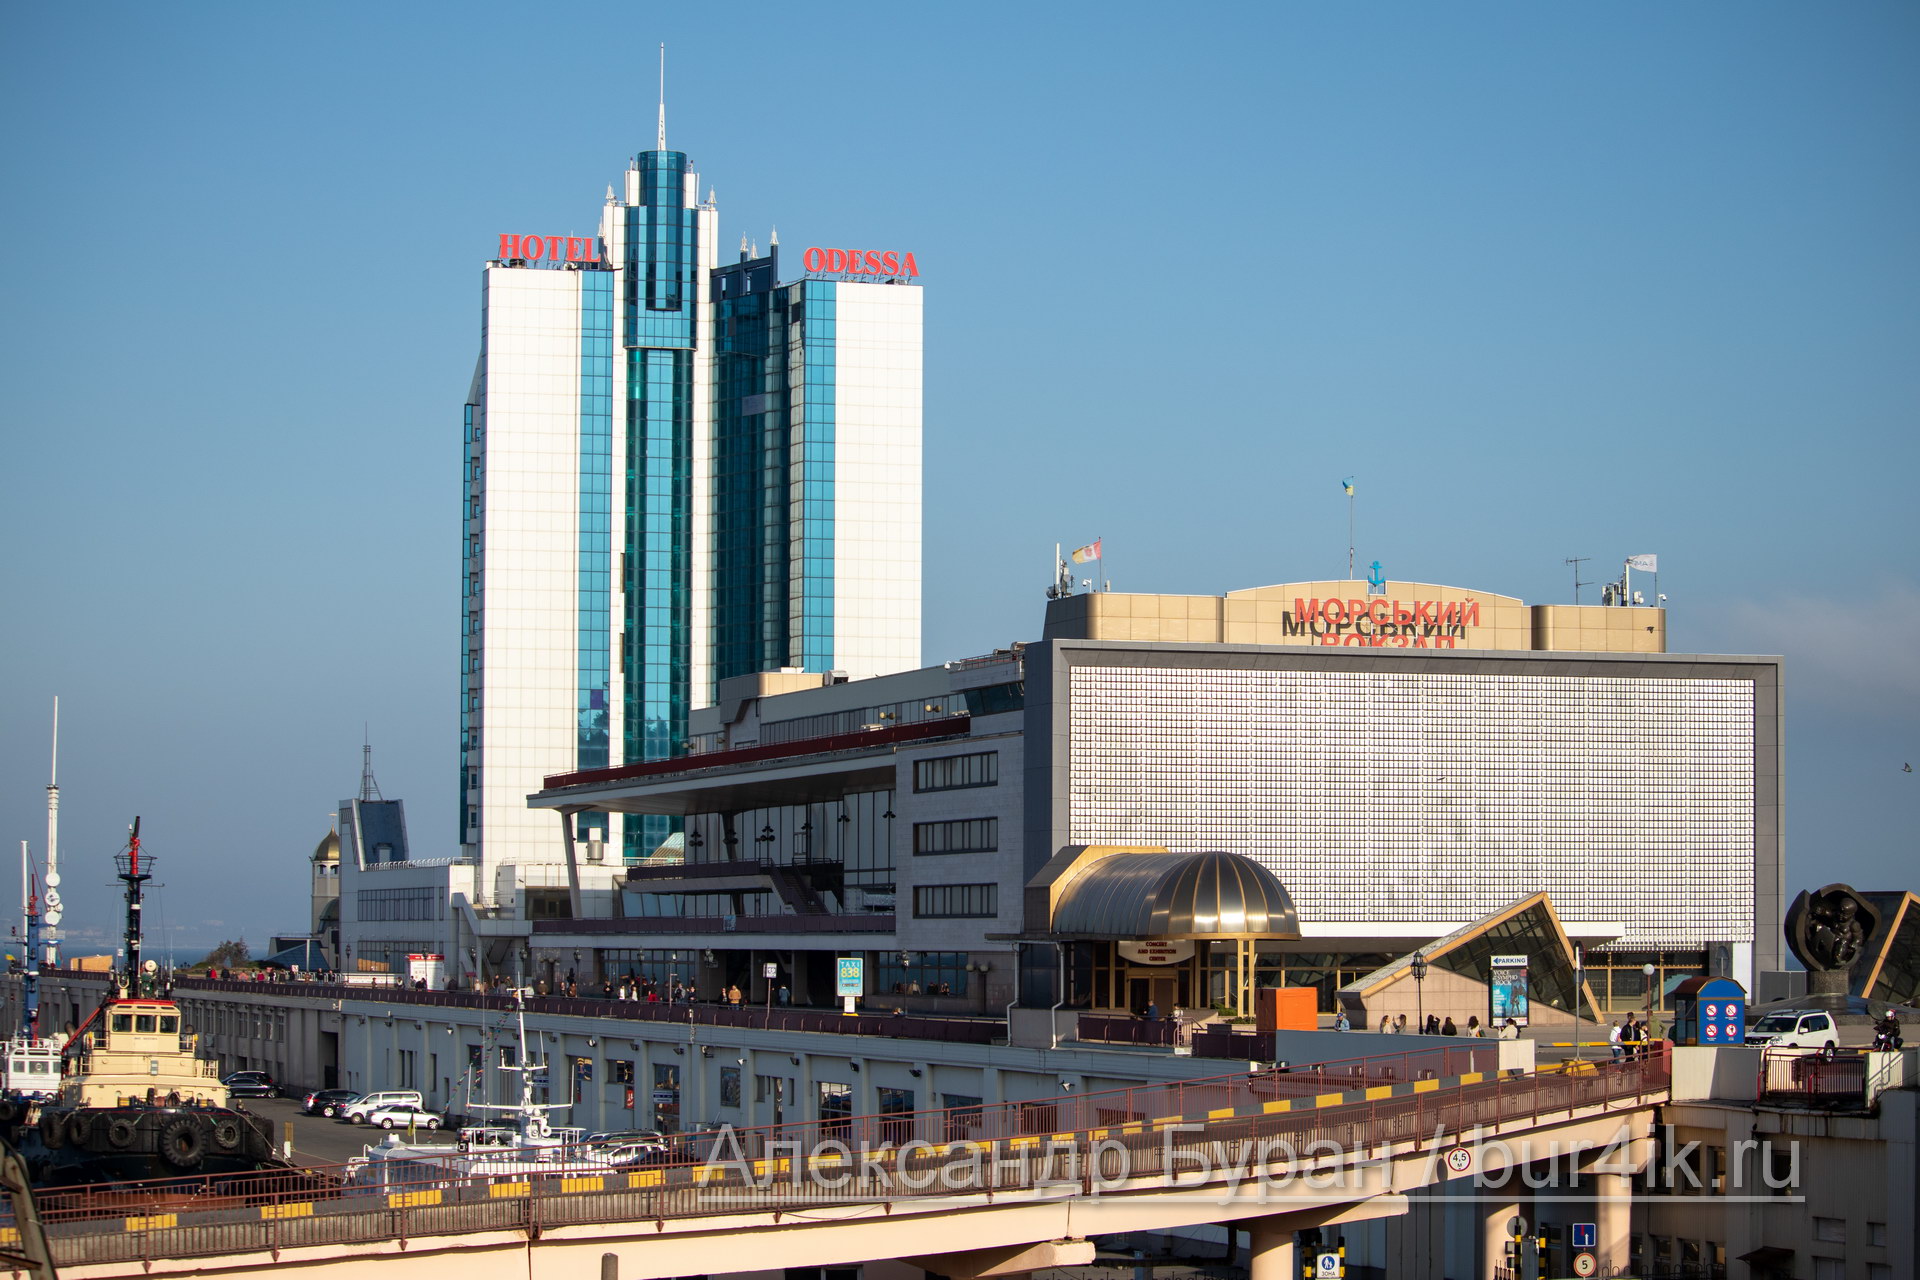 Административное здание порта в город - Украина, Одесса, 17,10,2019